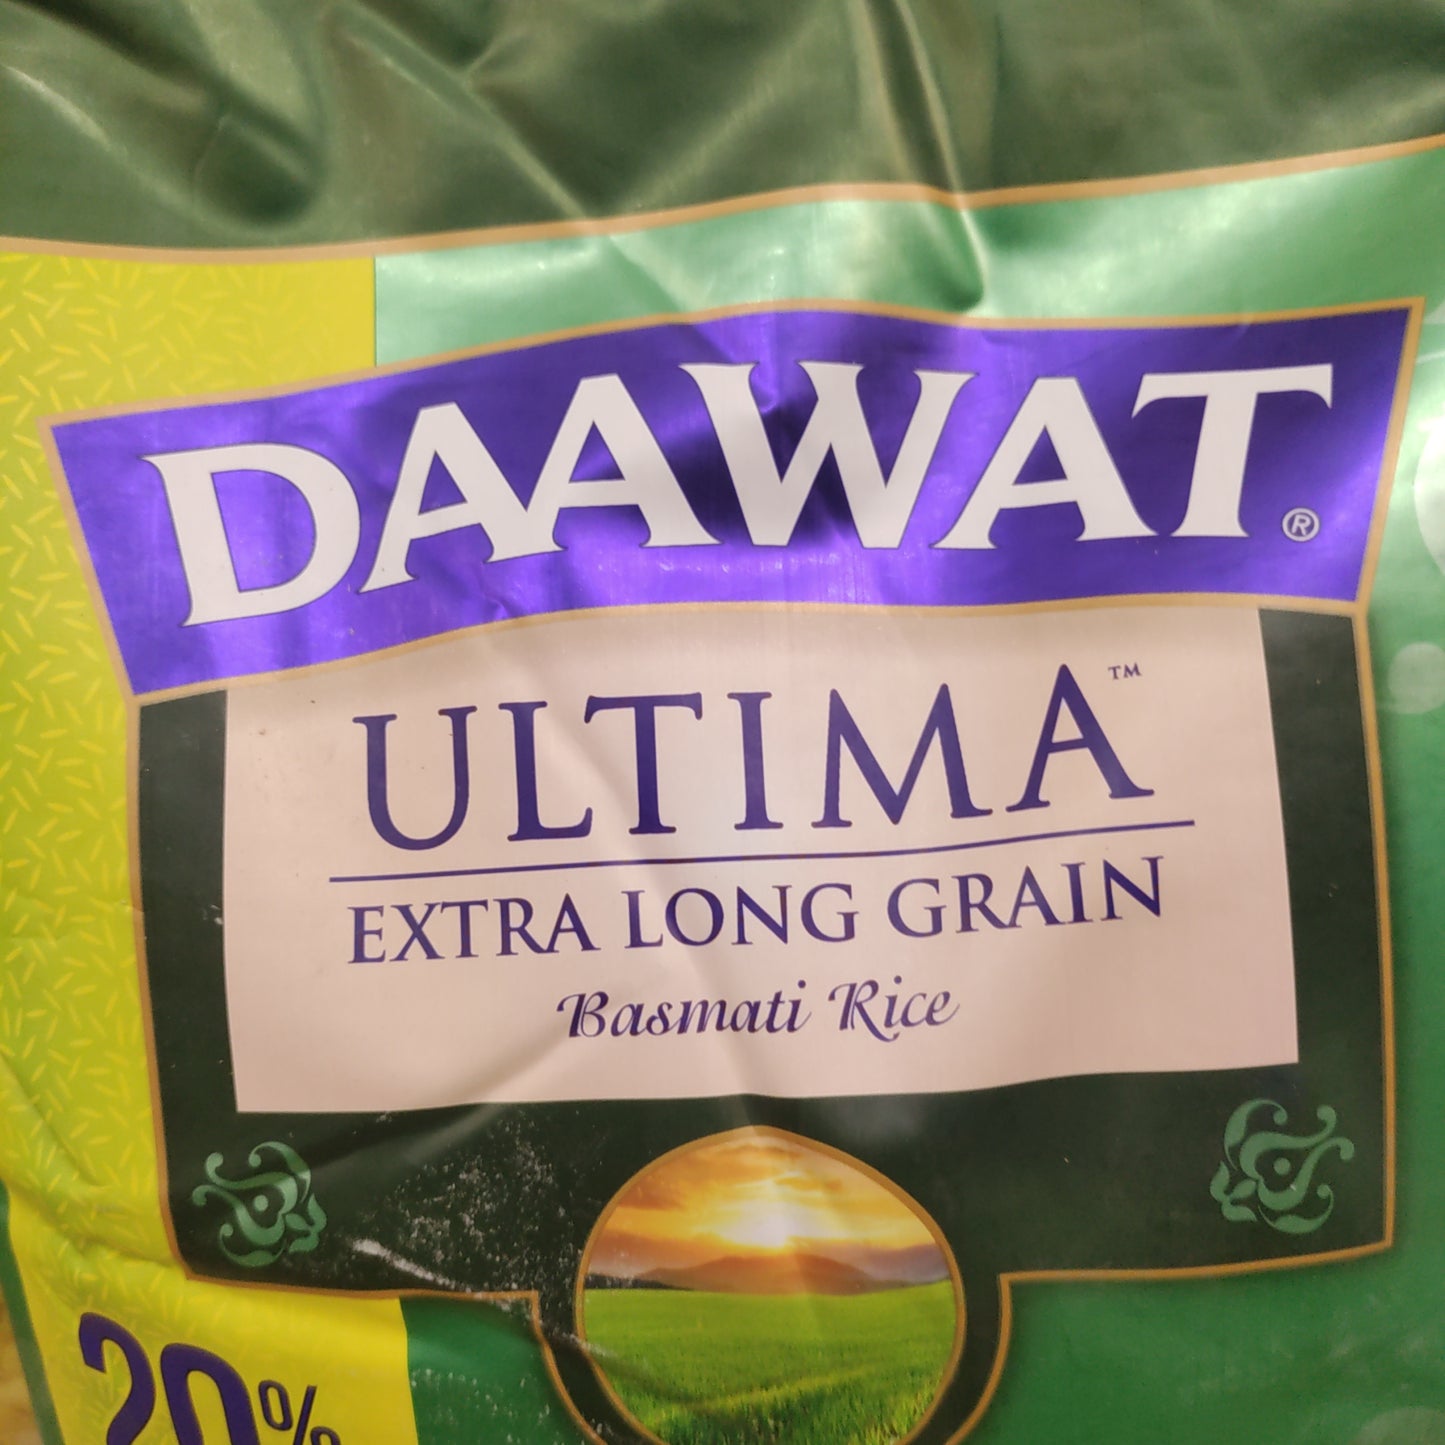 Daawat traditional basmati rice 10 lbs